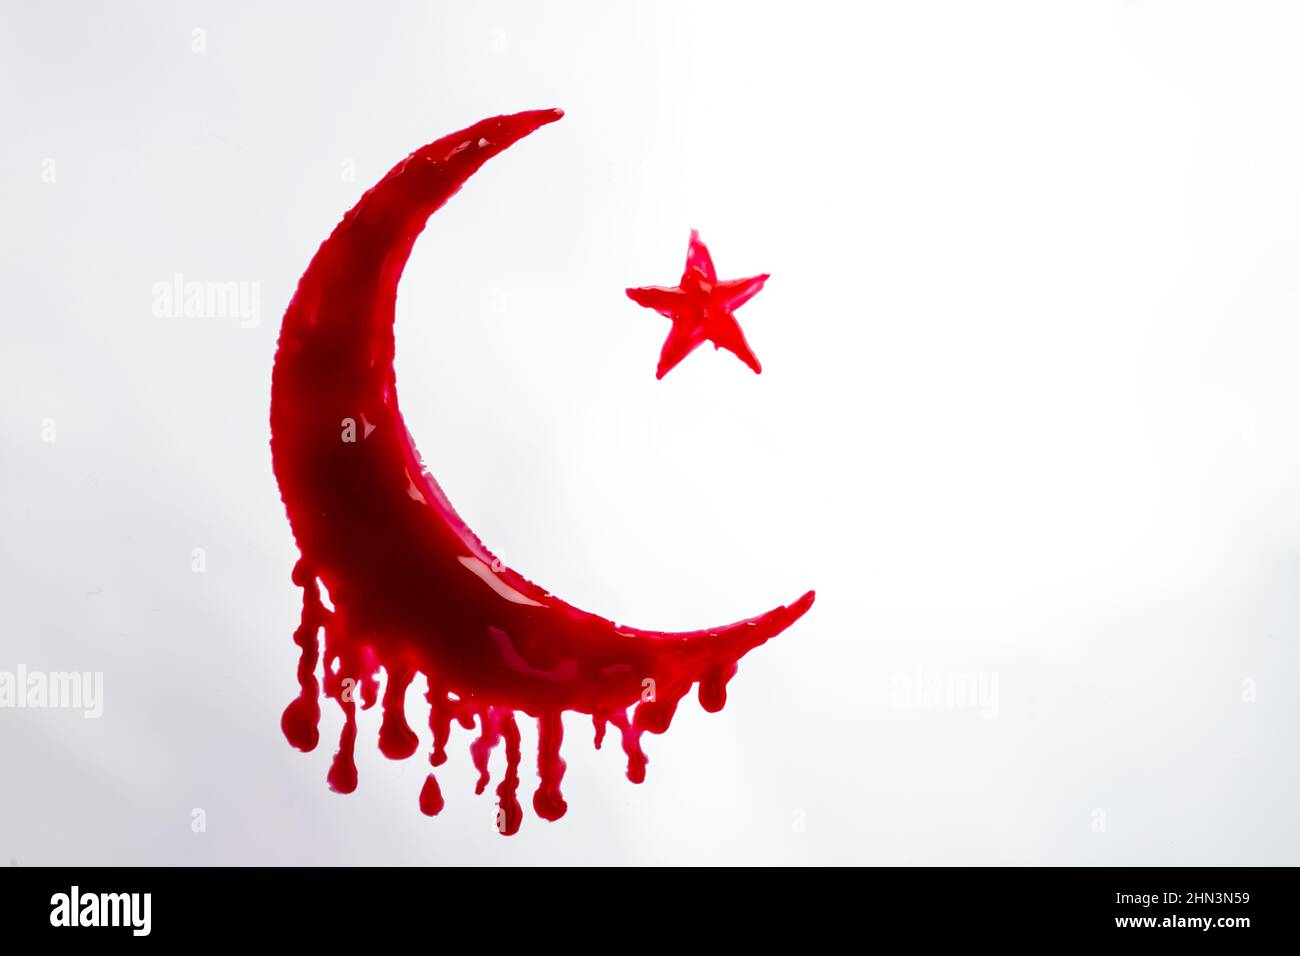 Símbolo islámico, Crescent y Star, garabateados con sangre sobre fondo blanco Foto de stock